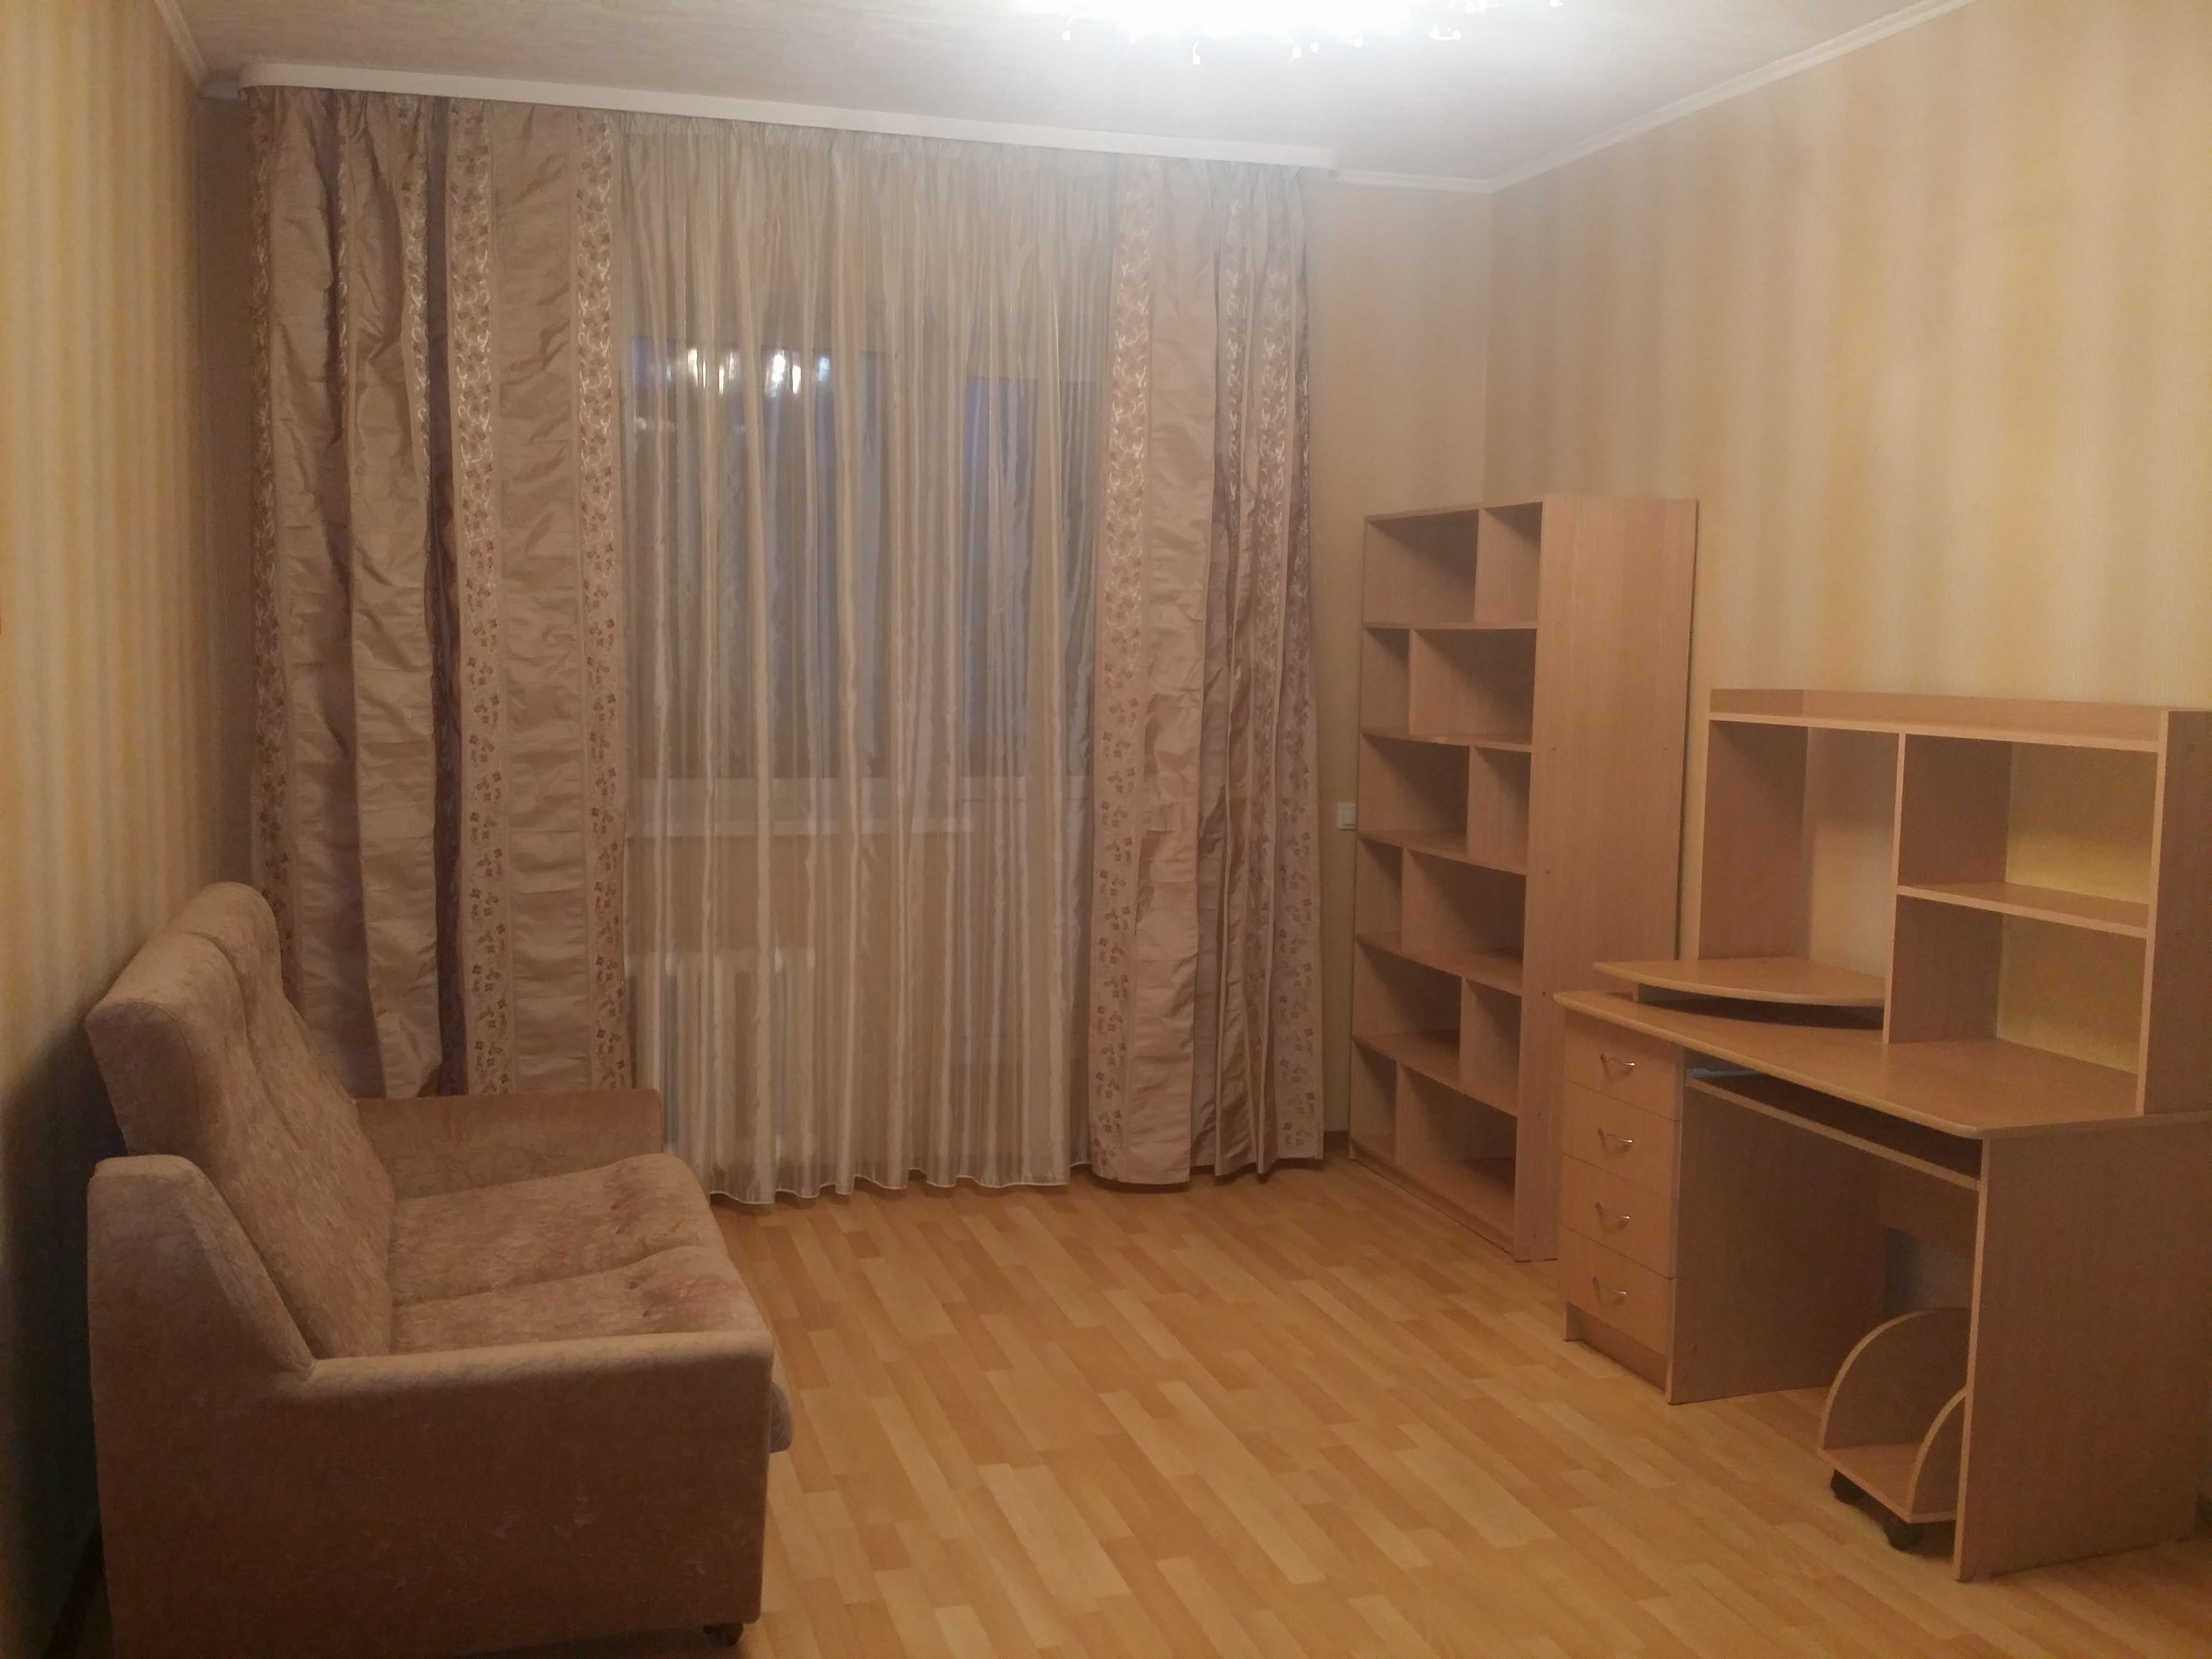 Однокомнатные квартиры в Железнодорожном районе города Ульяновска. 1 комнатные авито иркутск купить